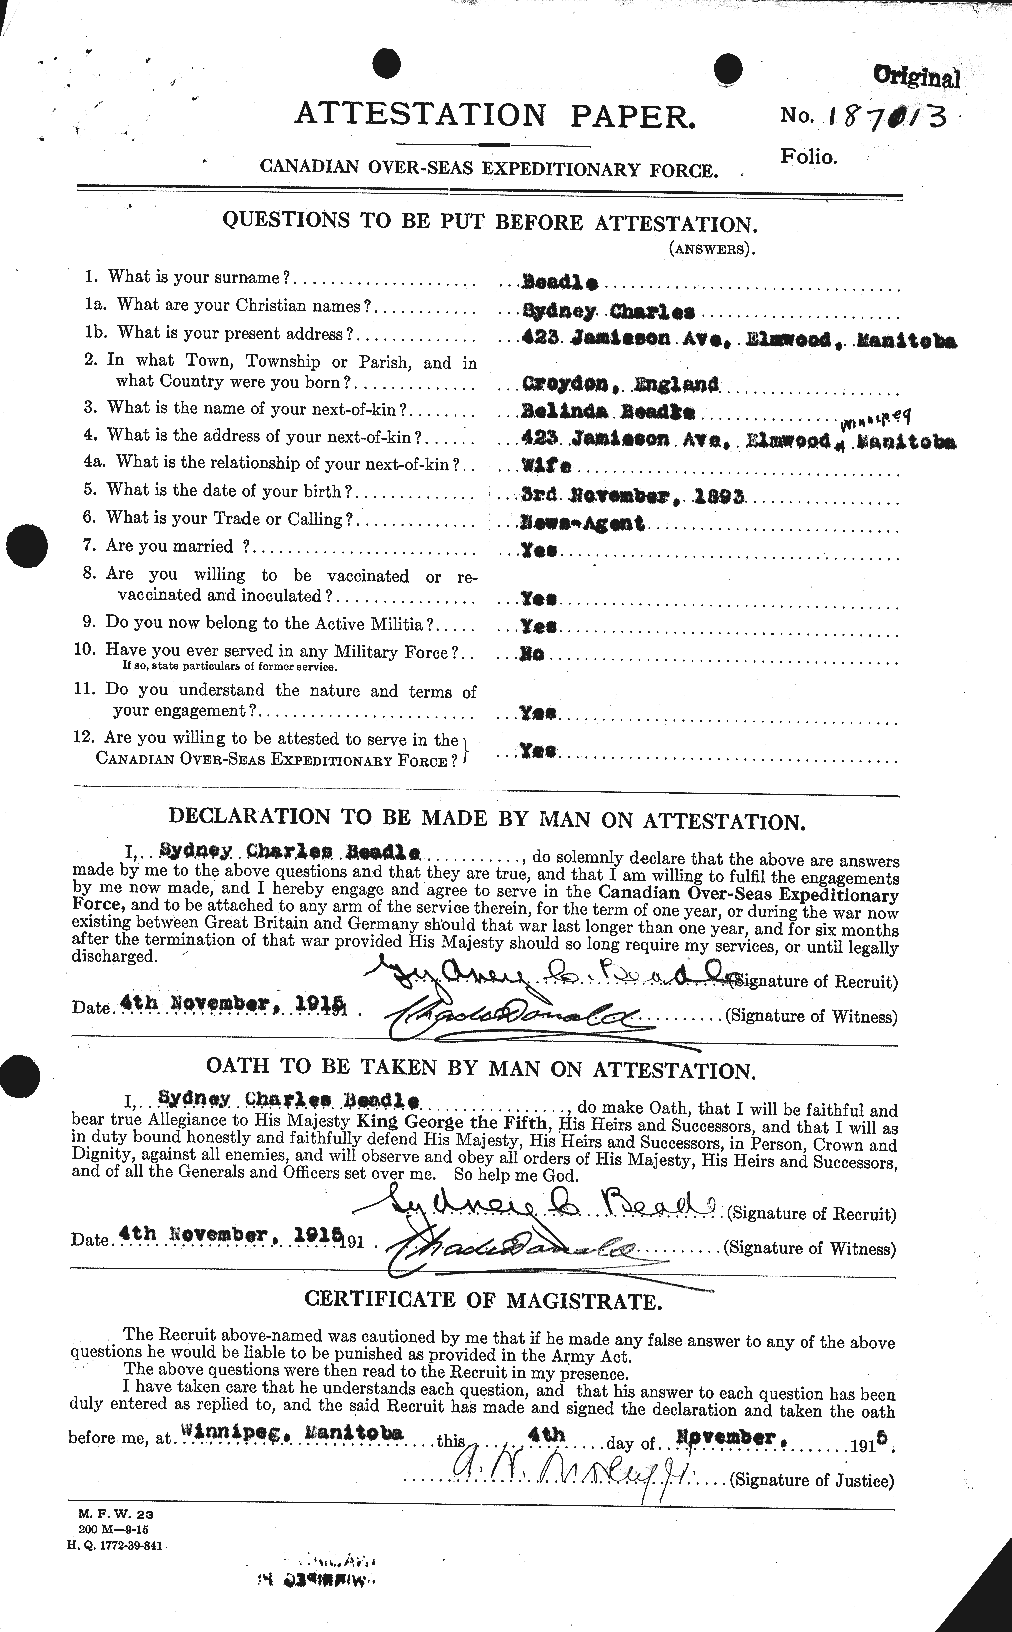 Dossiers du Personnel de la Première Guerre mondiale - CEC 235204a